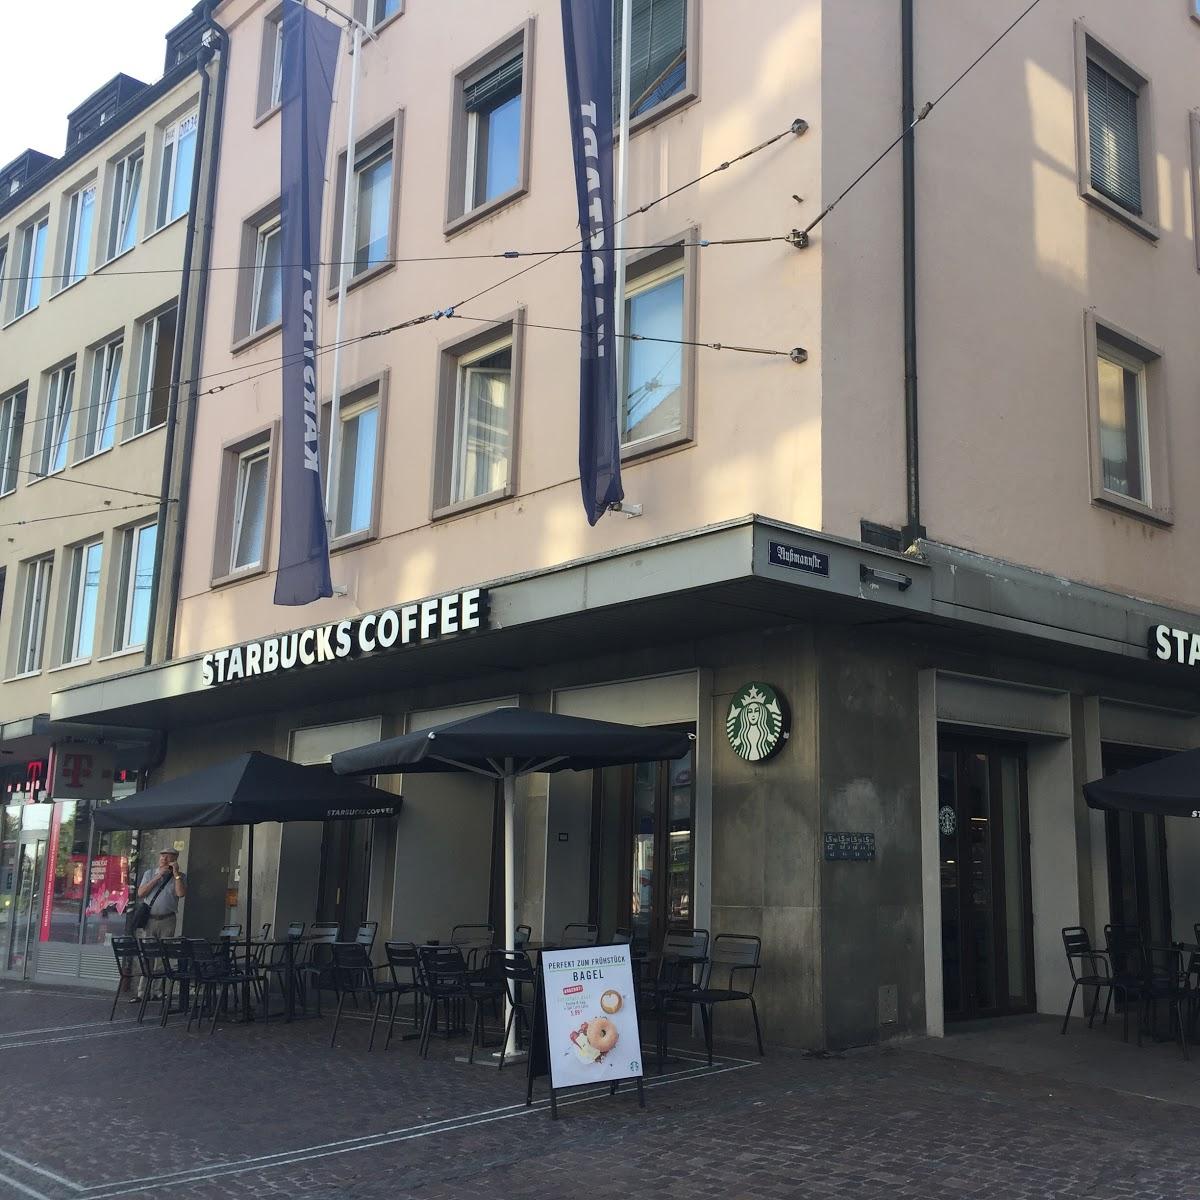 Restaurant "Starbucks" in Freiburg im Breisgau